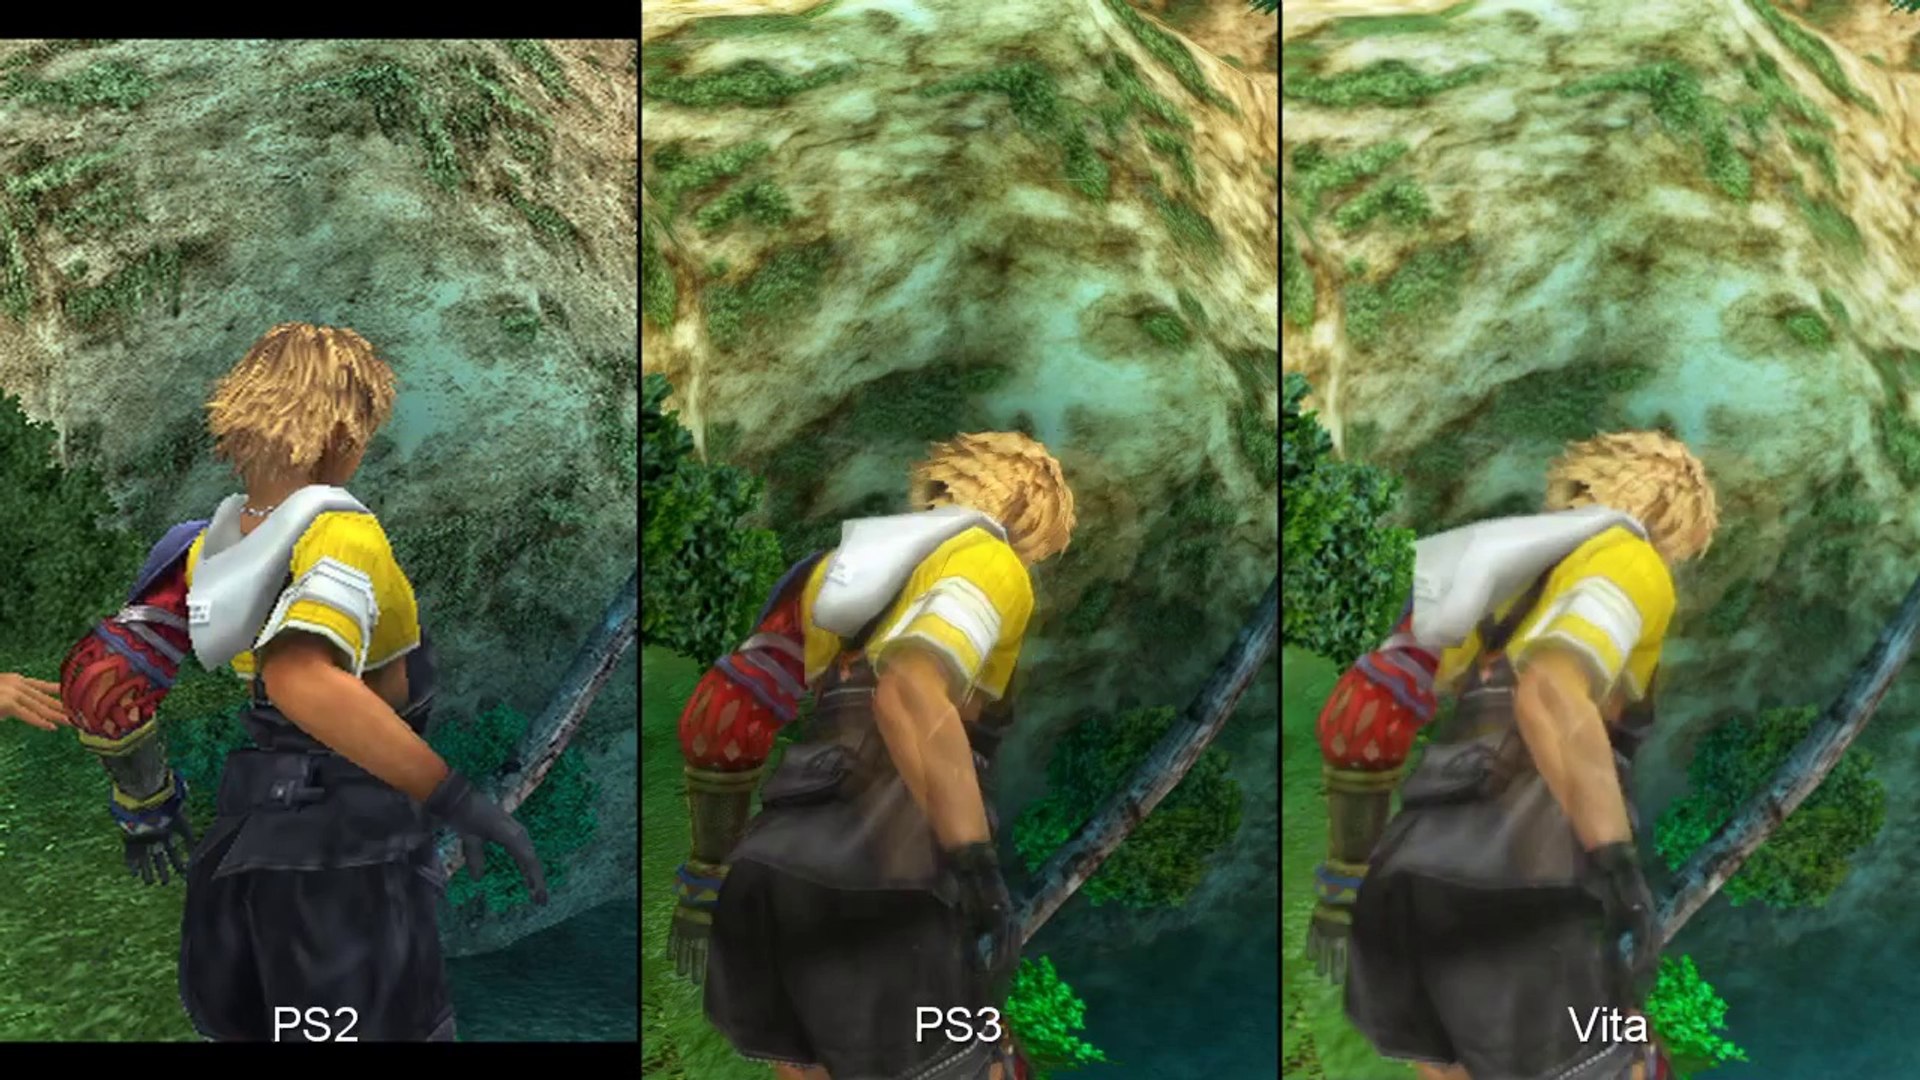 Final Fantasy X X 2 Hd Remaster Ps2 Vs Ps3 Vs Vita Comparison Video Dailymotion